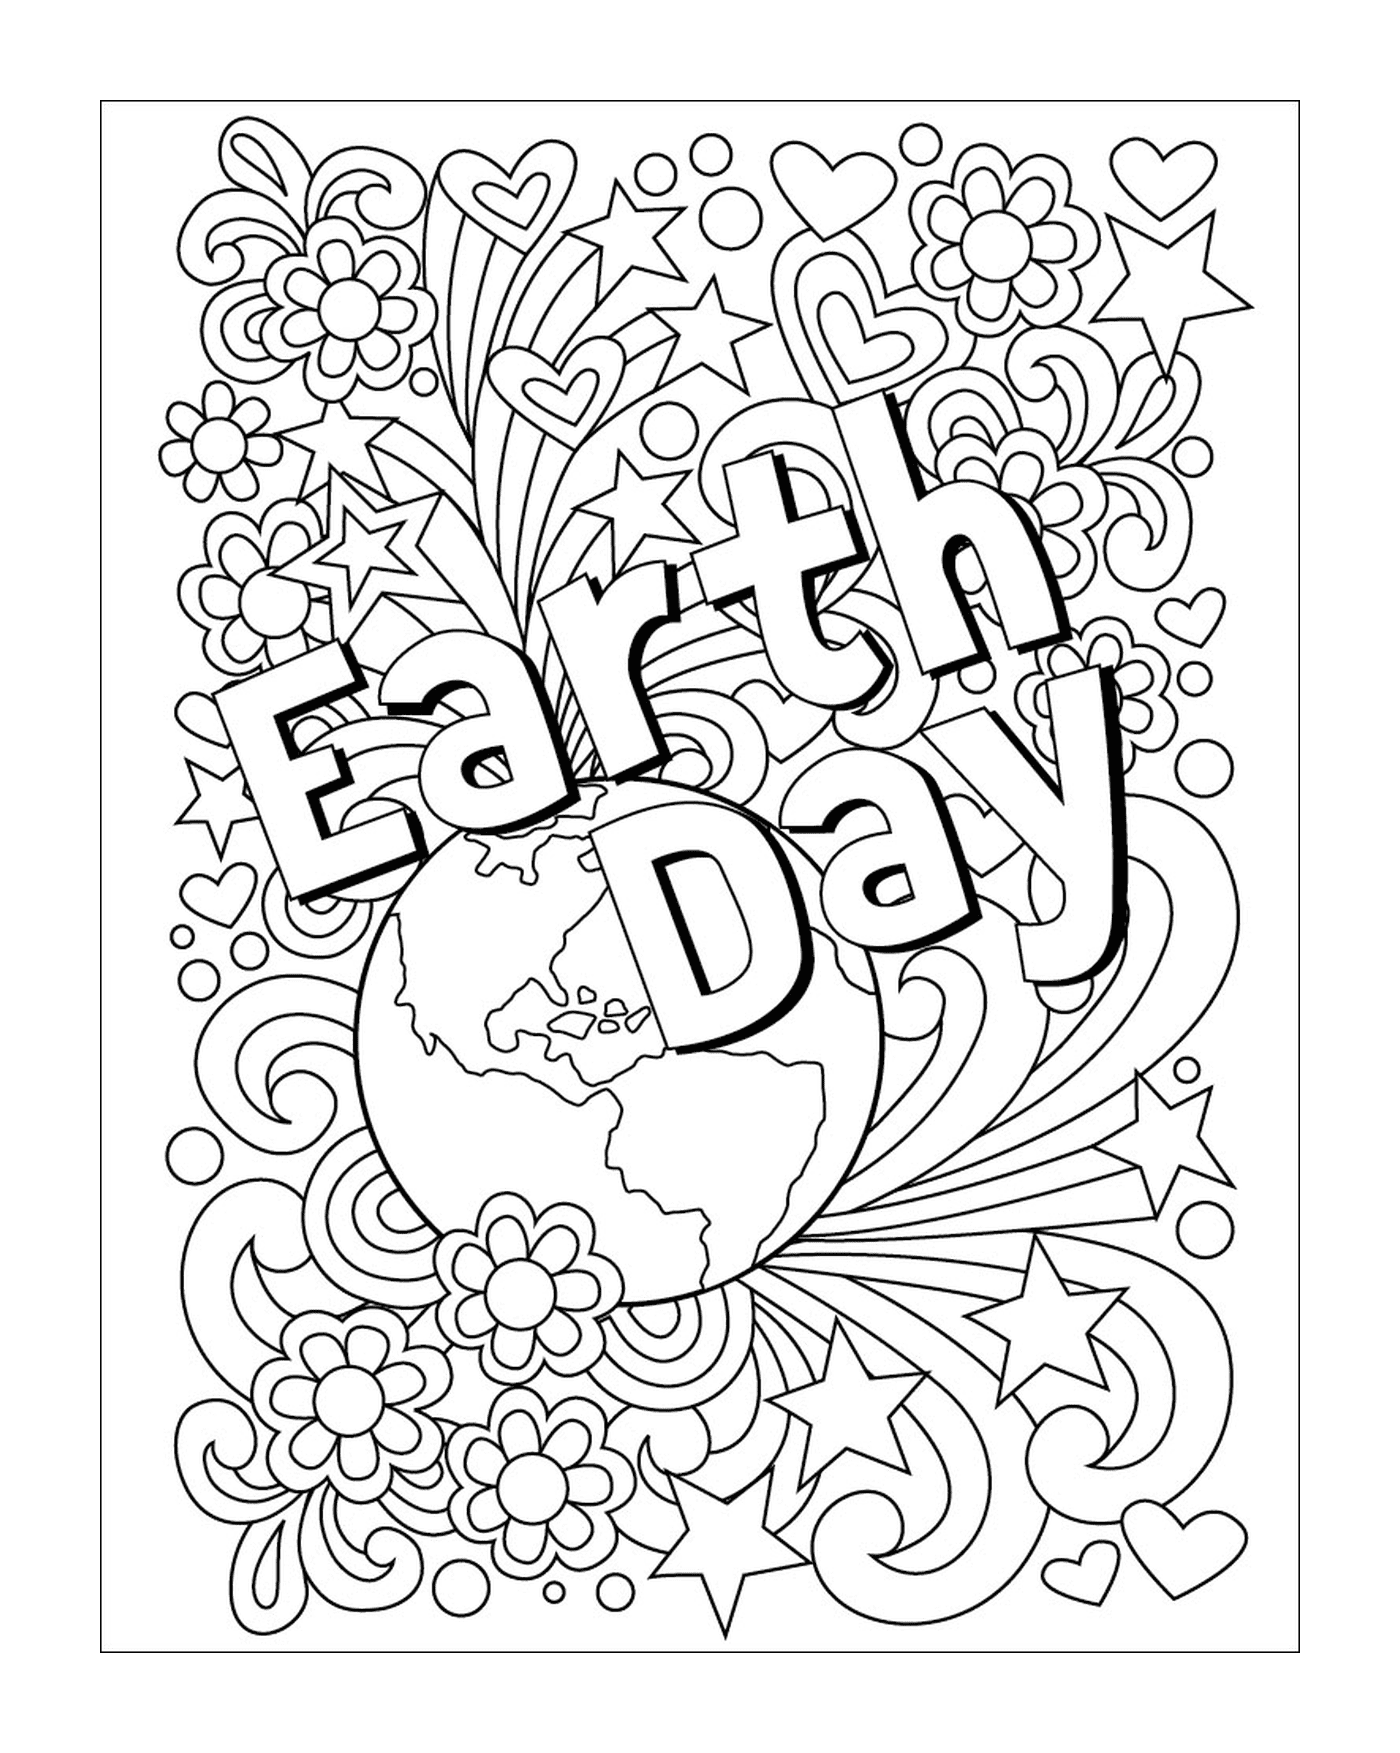  Día de adultos para la Tierra, las flores y el globo terráqueo 